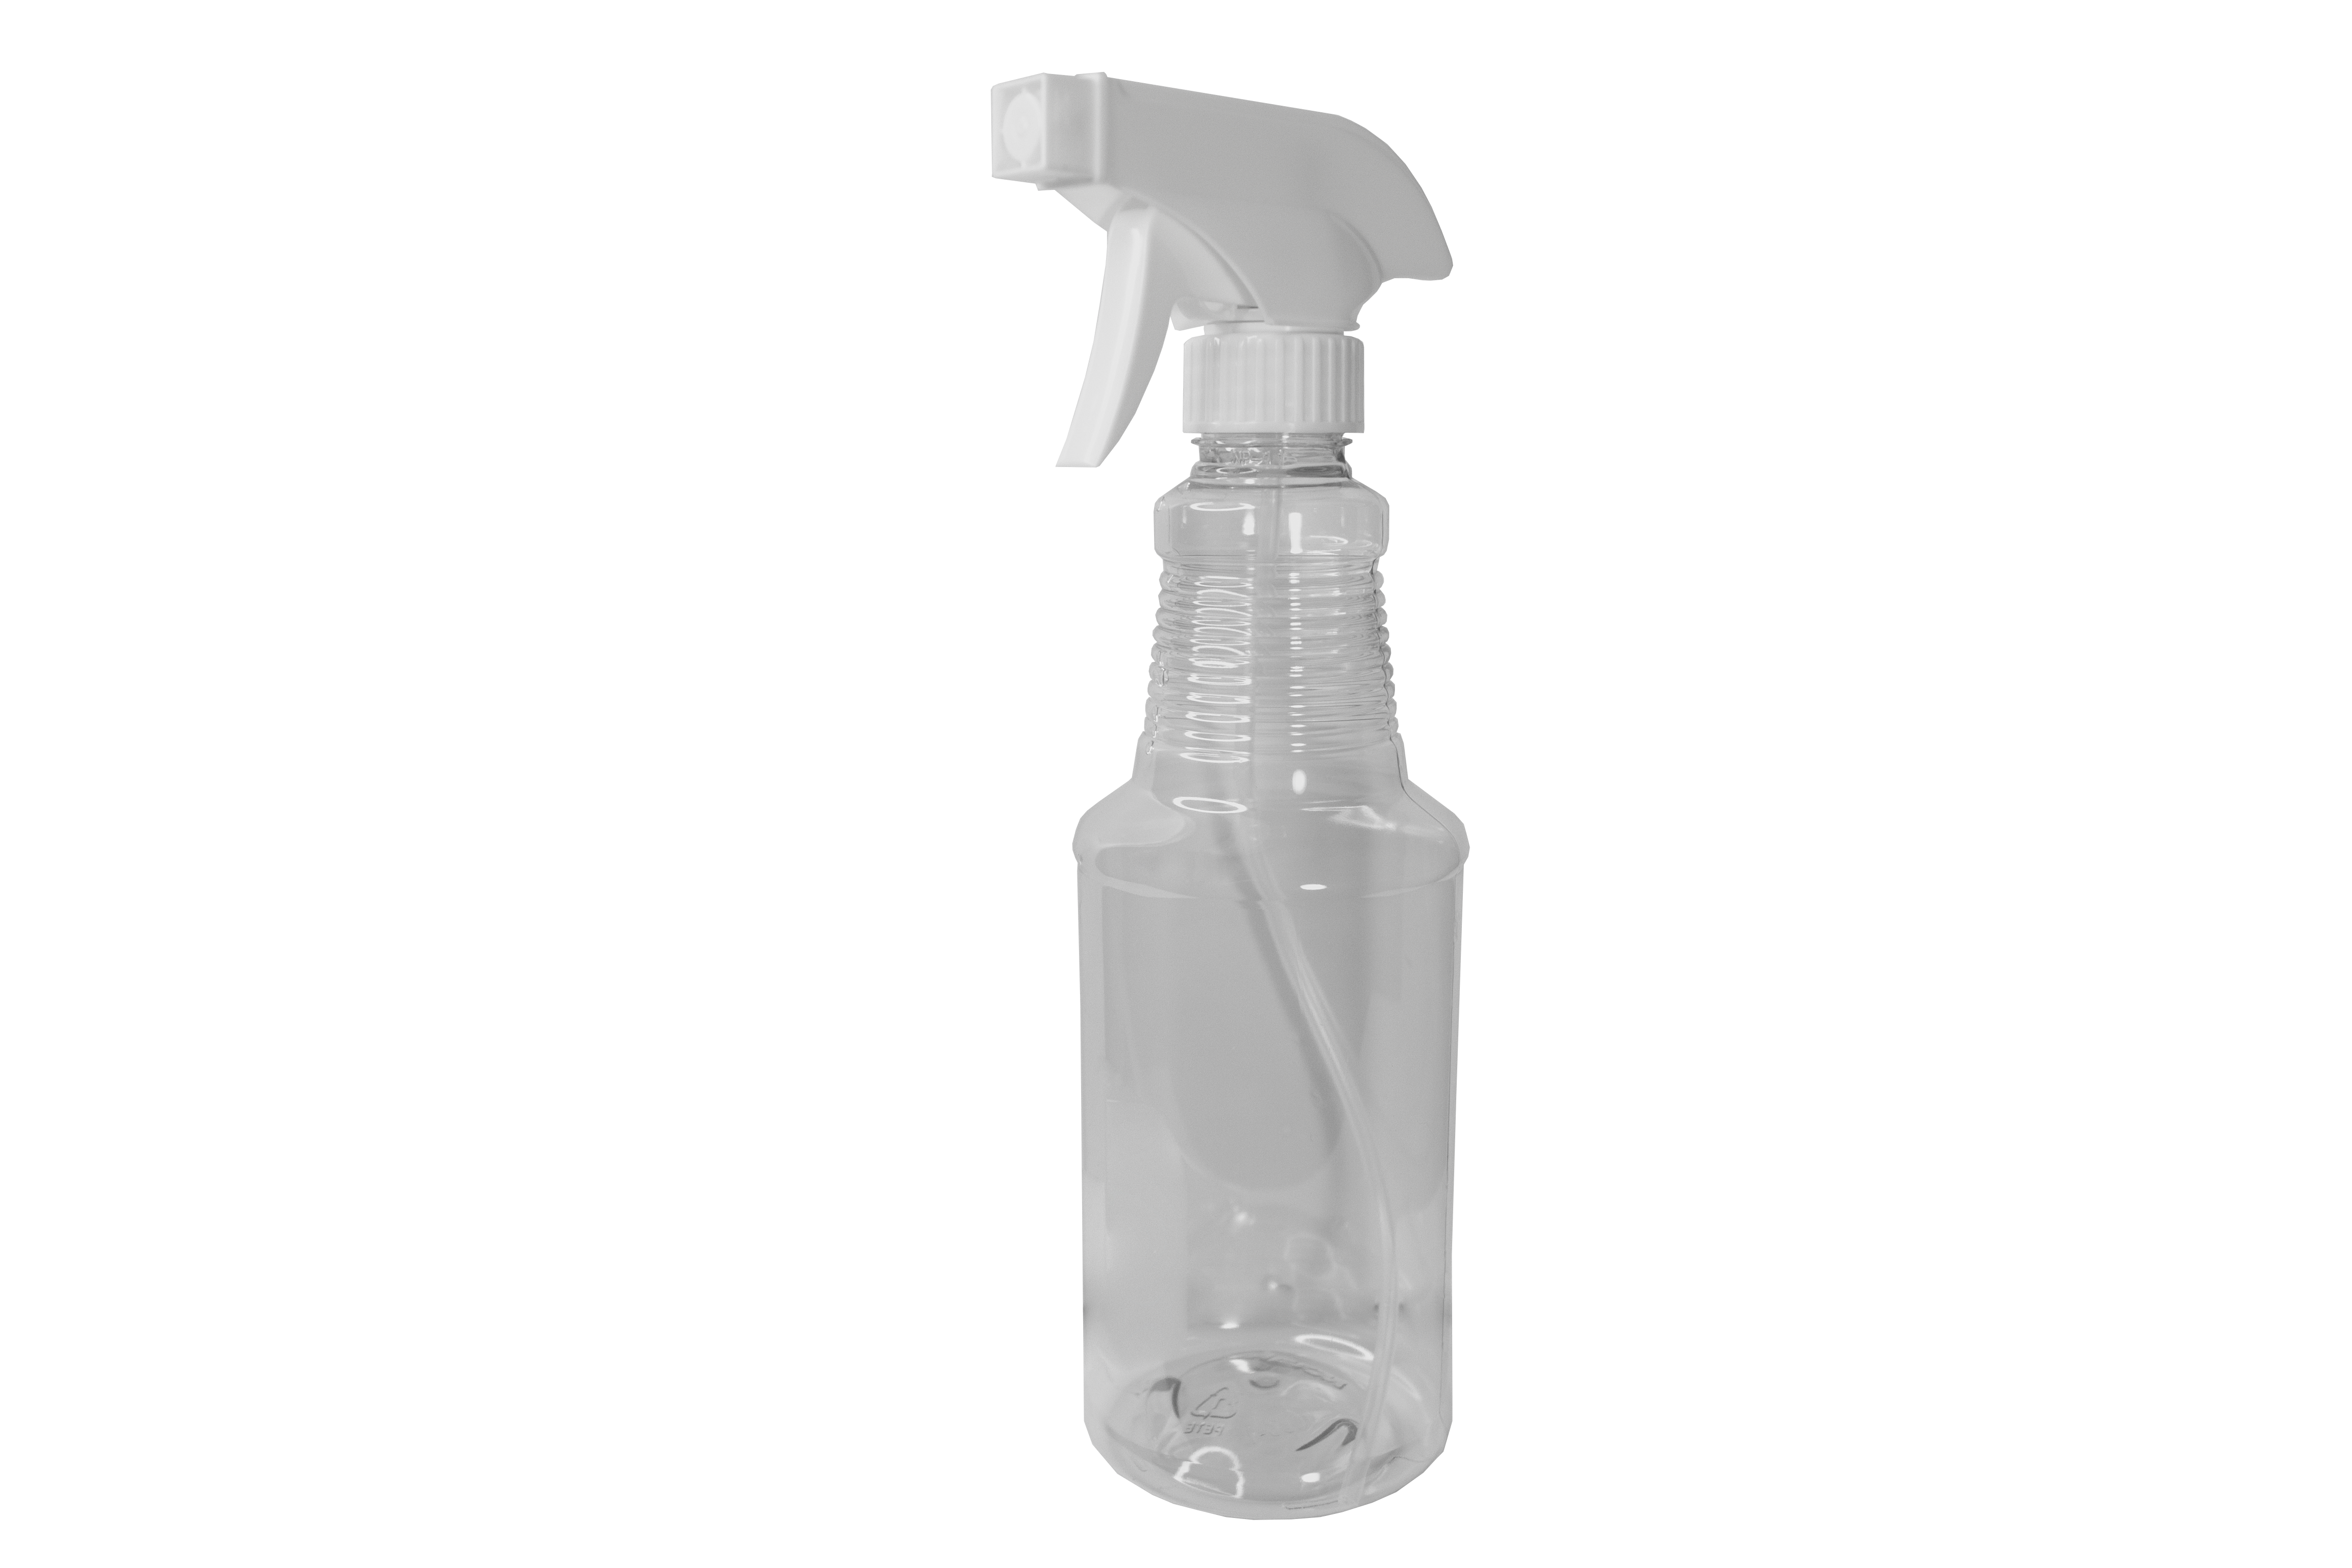 Sanitary Spray Bottle